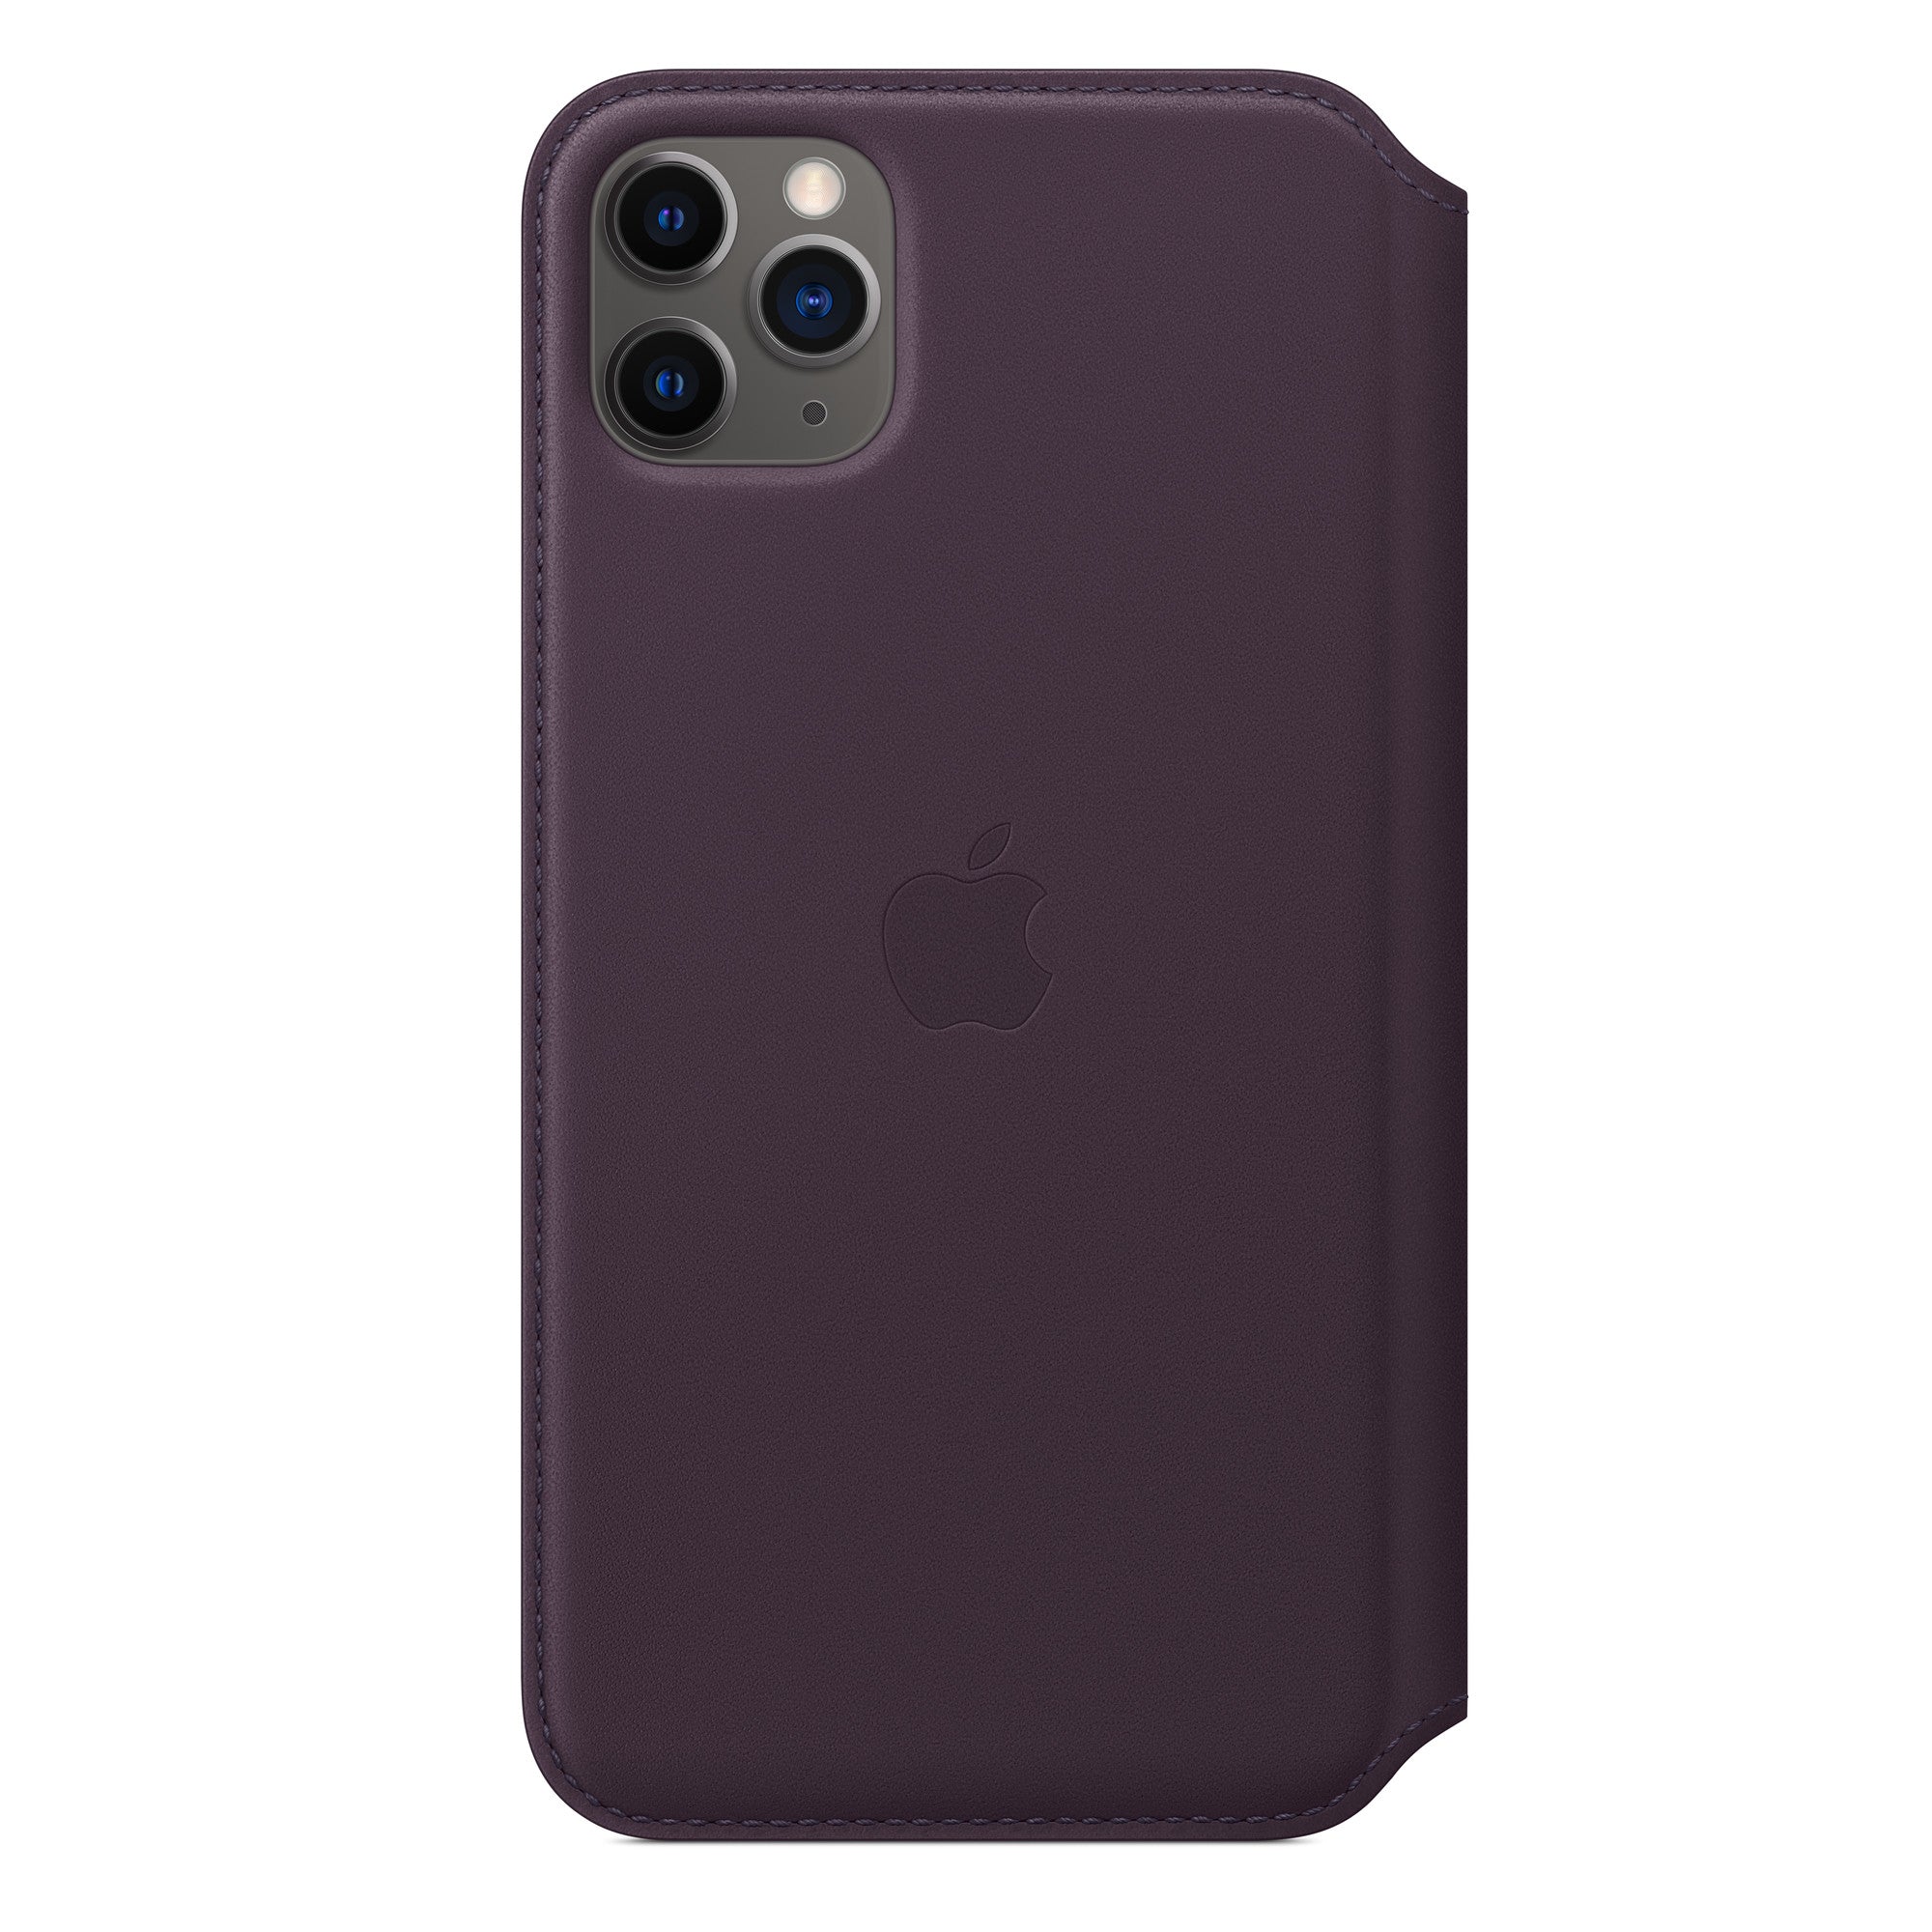 Apple iPhone 11 Pro Max 64GB Space Grau Fair Ohne Vertrag mit Apple iPhone 11 Pro Max Leder Folio - Aubergine